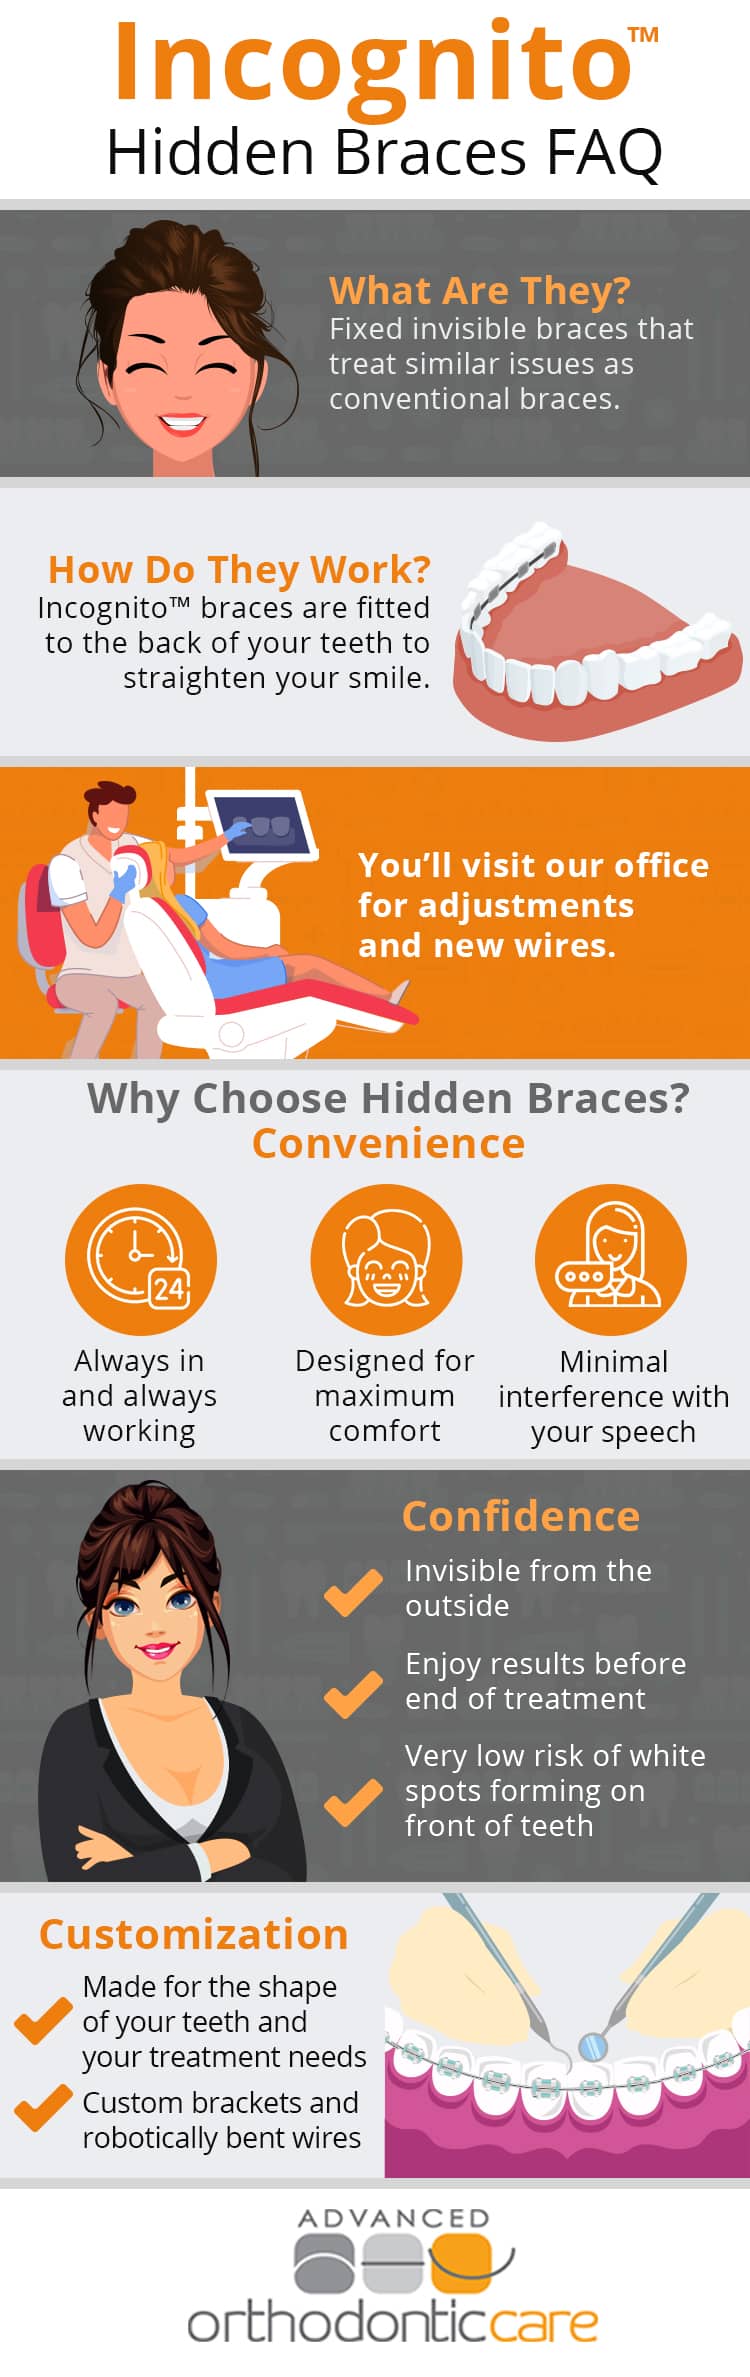 Incognito hidden braces FAQ infographic